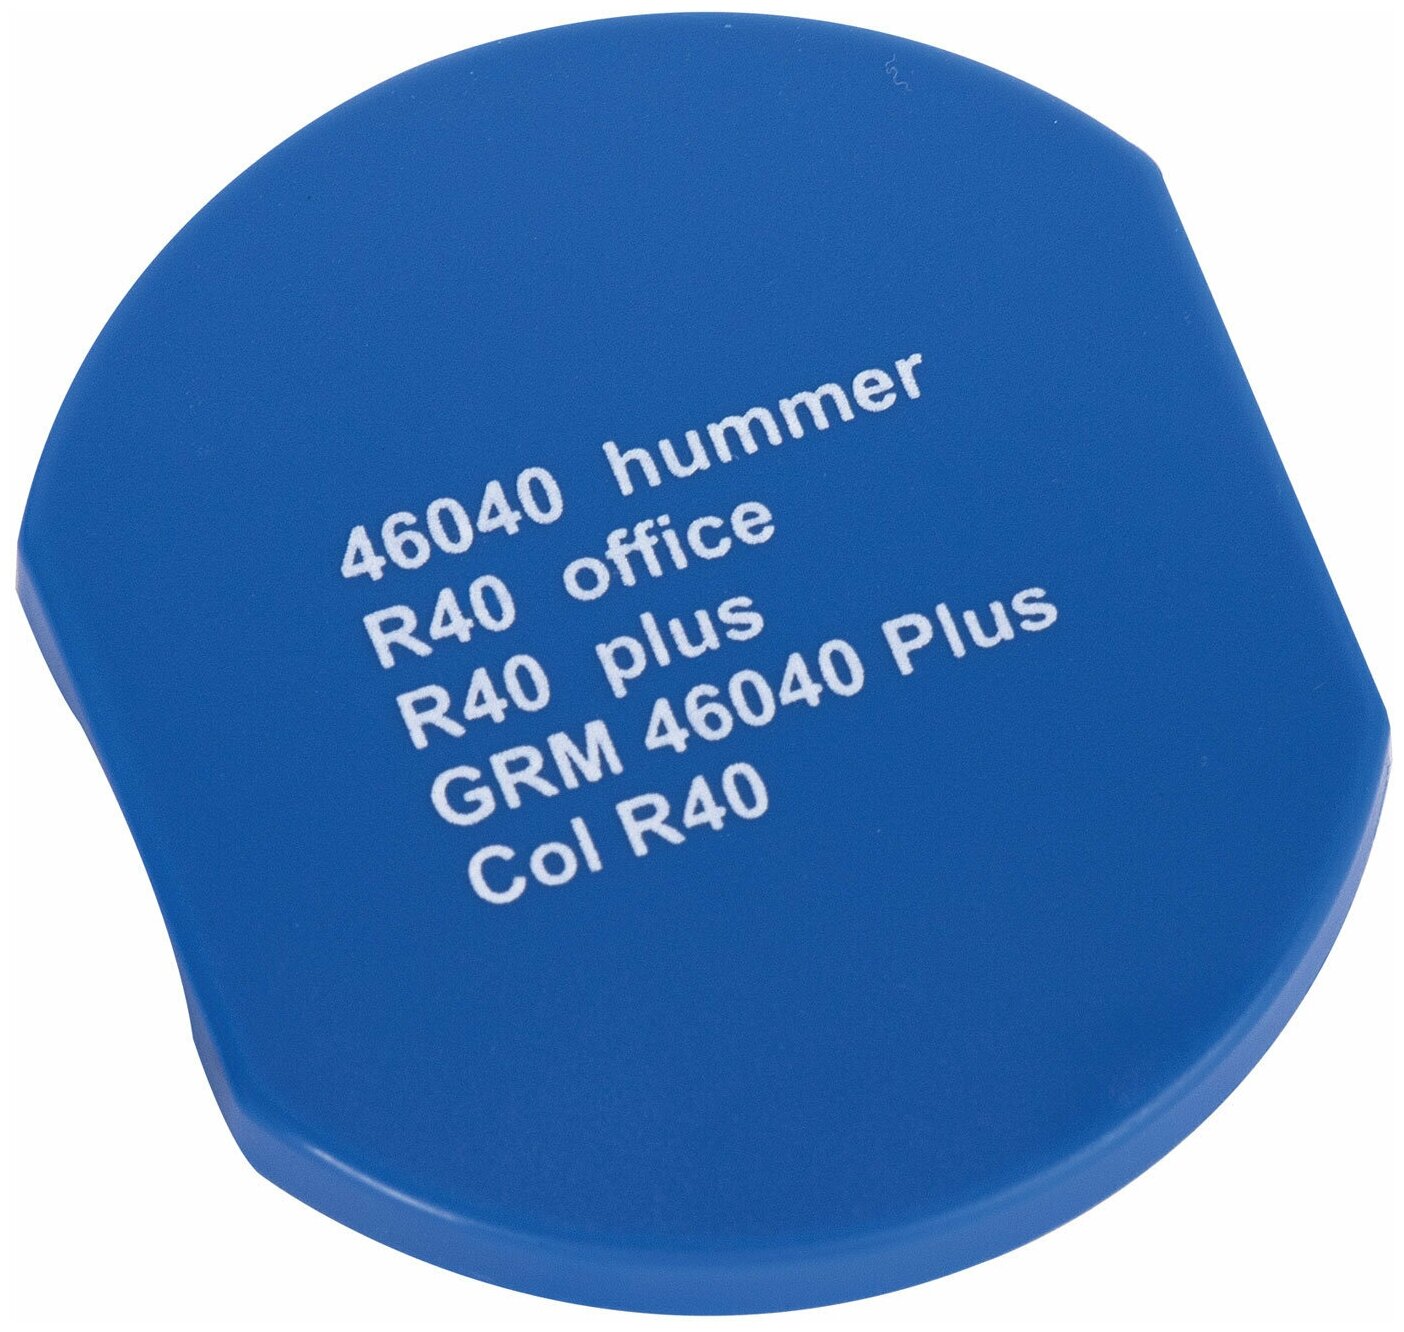 Подушка сменная диаметр 40 мм фиолетовая для GRM R40Plus 46040 Hummer Colop Printer R40